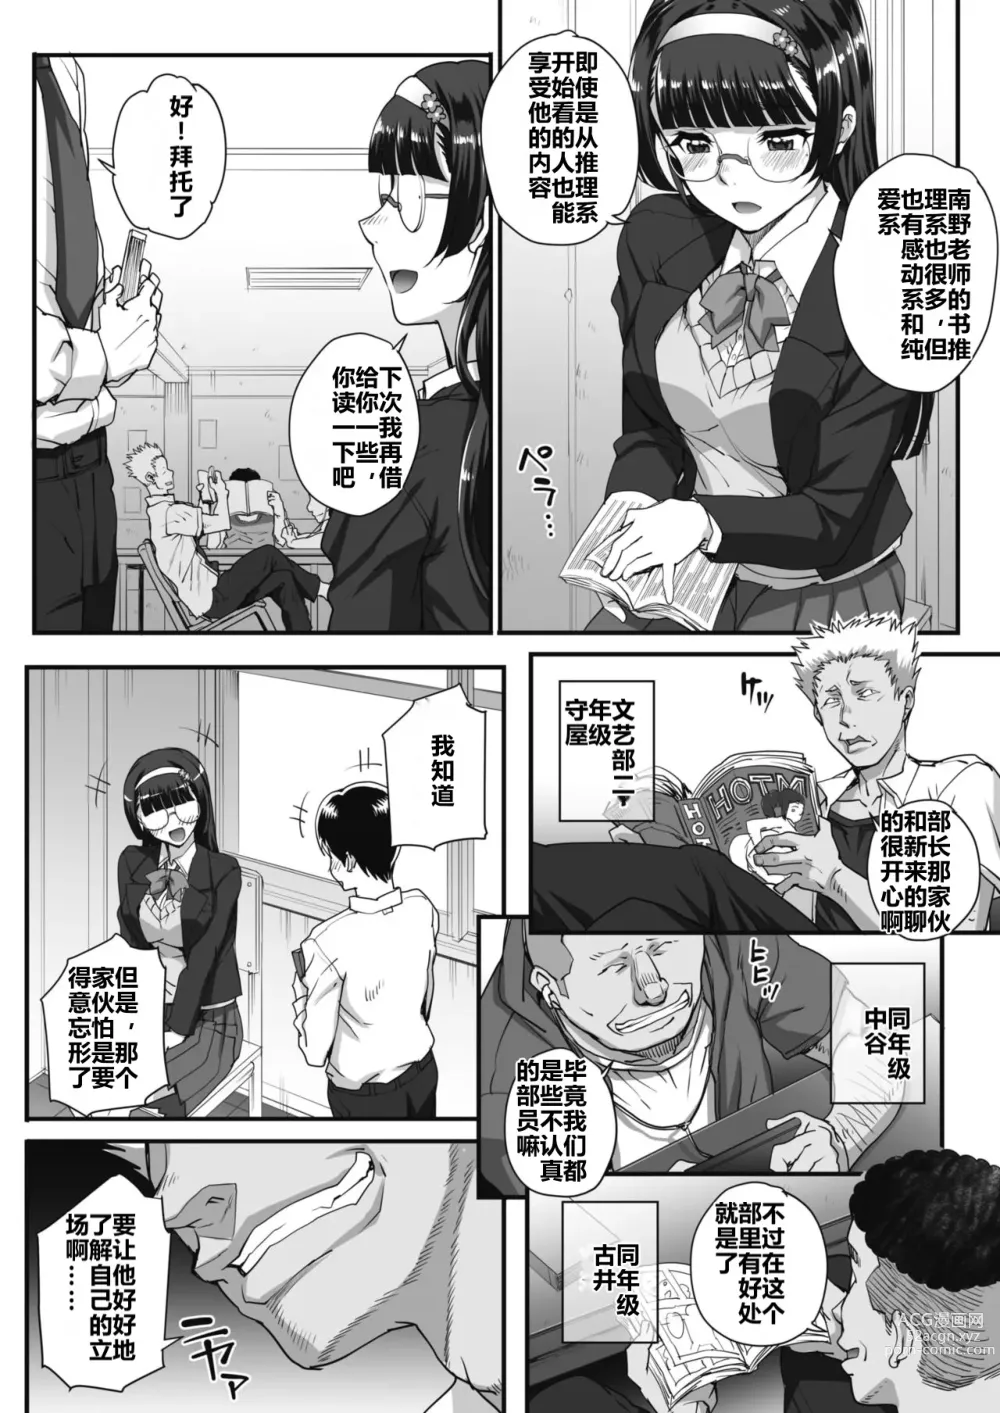 Page 2 of manga 贪恋文学的人们